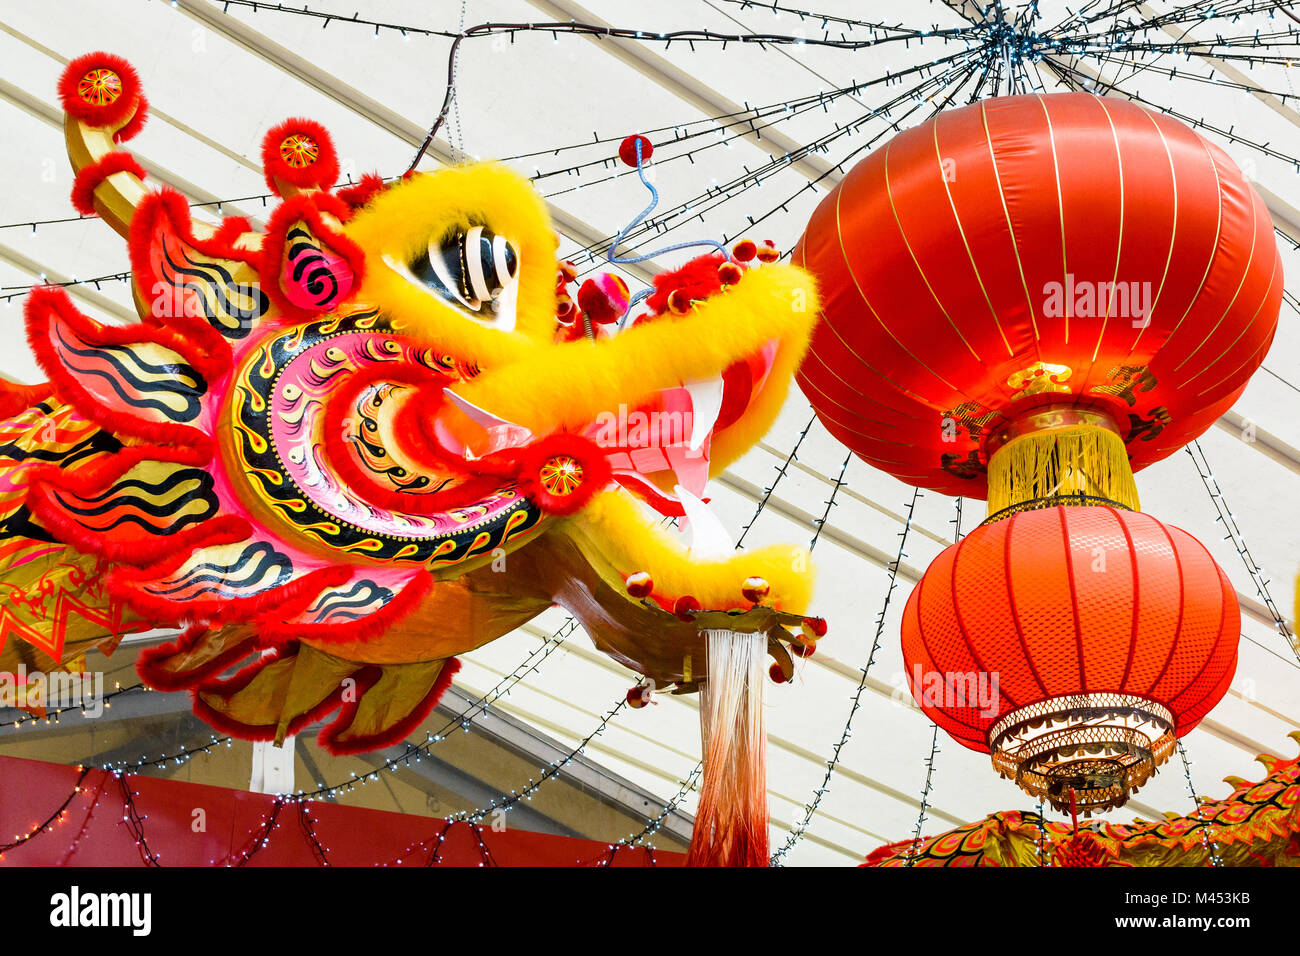 Ambiance festive et décorations colorées faites de deux dragons et des lanternes en papier rouge pour la célébration du nouvel an chinois. Banque D'Images